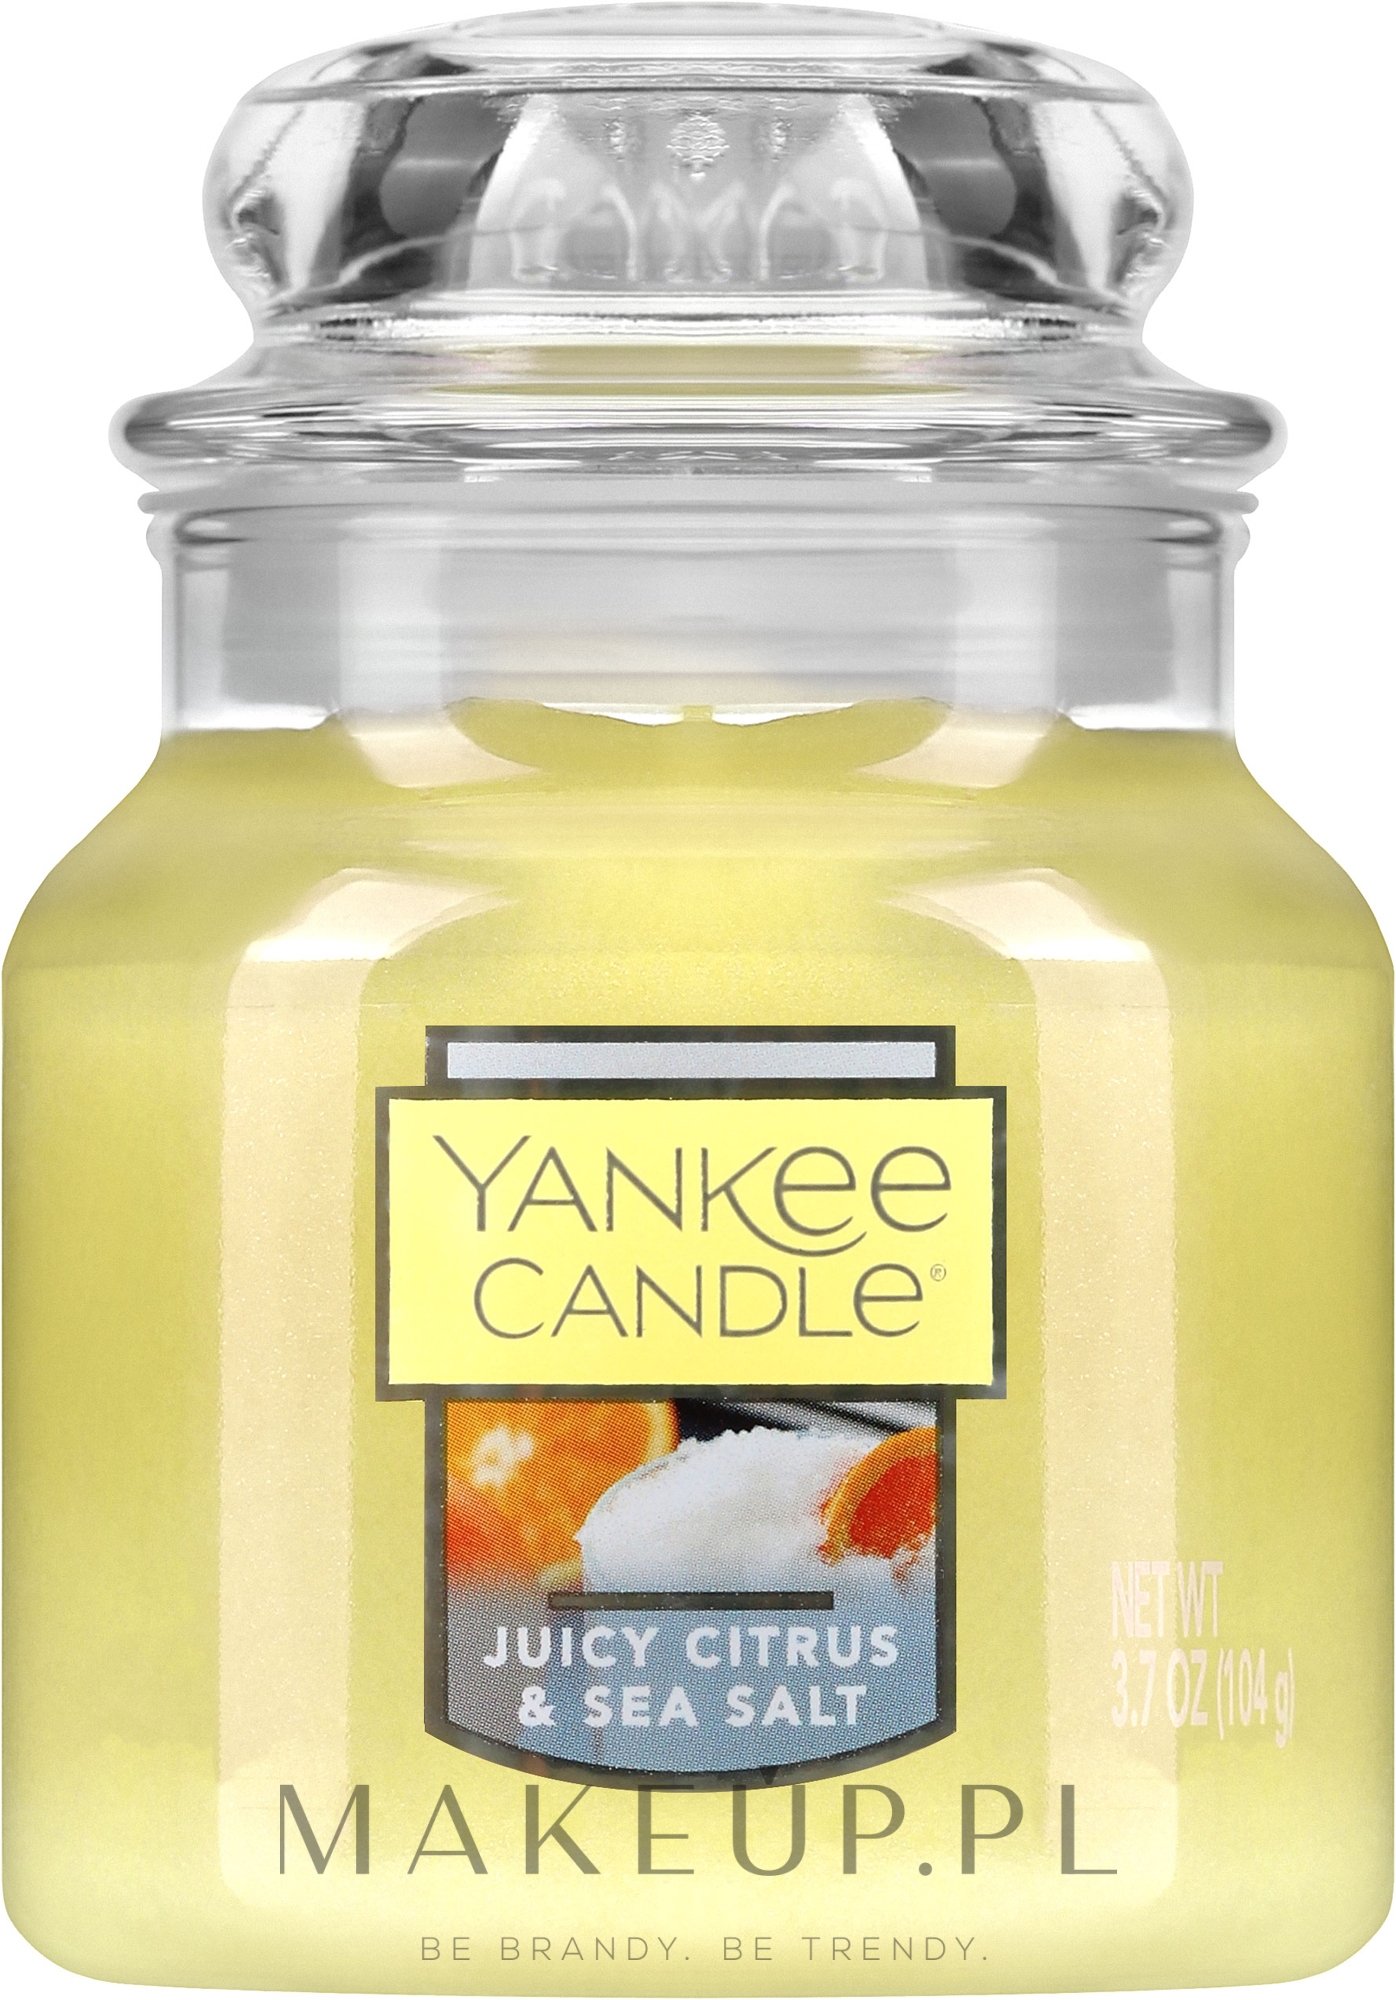 Świeca zapachowa w słoiku Soczyste cytrusy i sól morska - Yankee Candle Juicy Citrus & Sea Salt — Zdjęcie 104 g